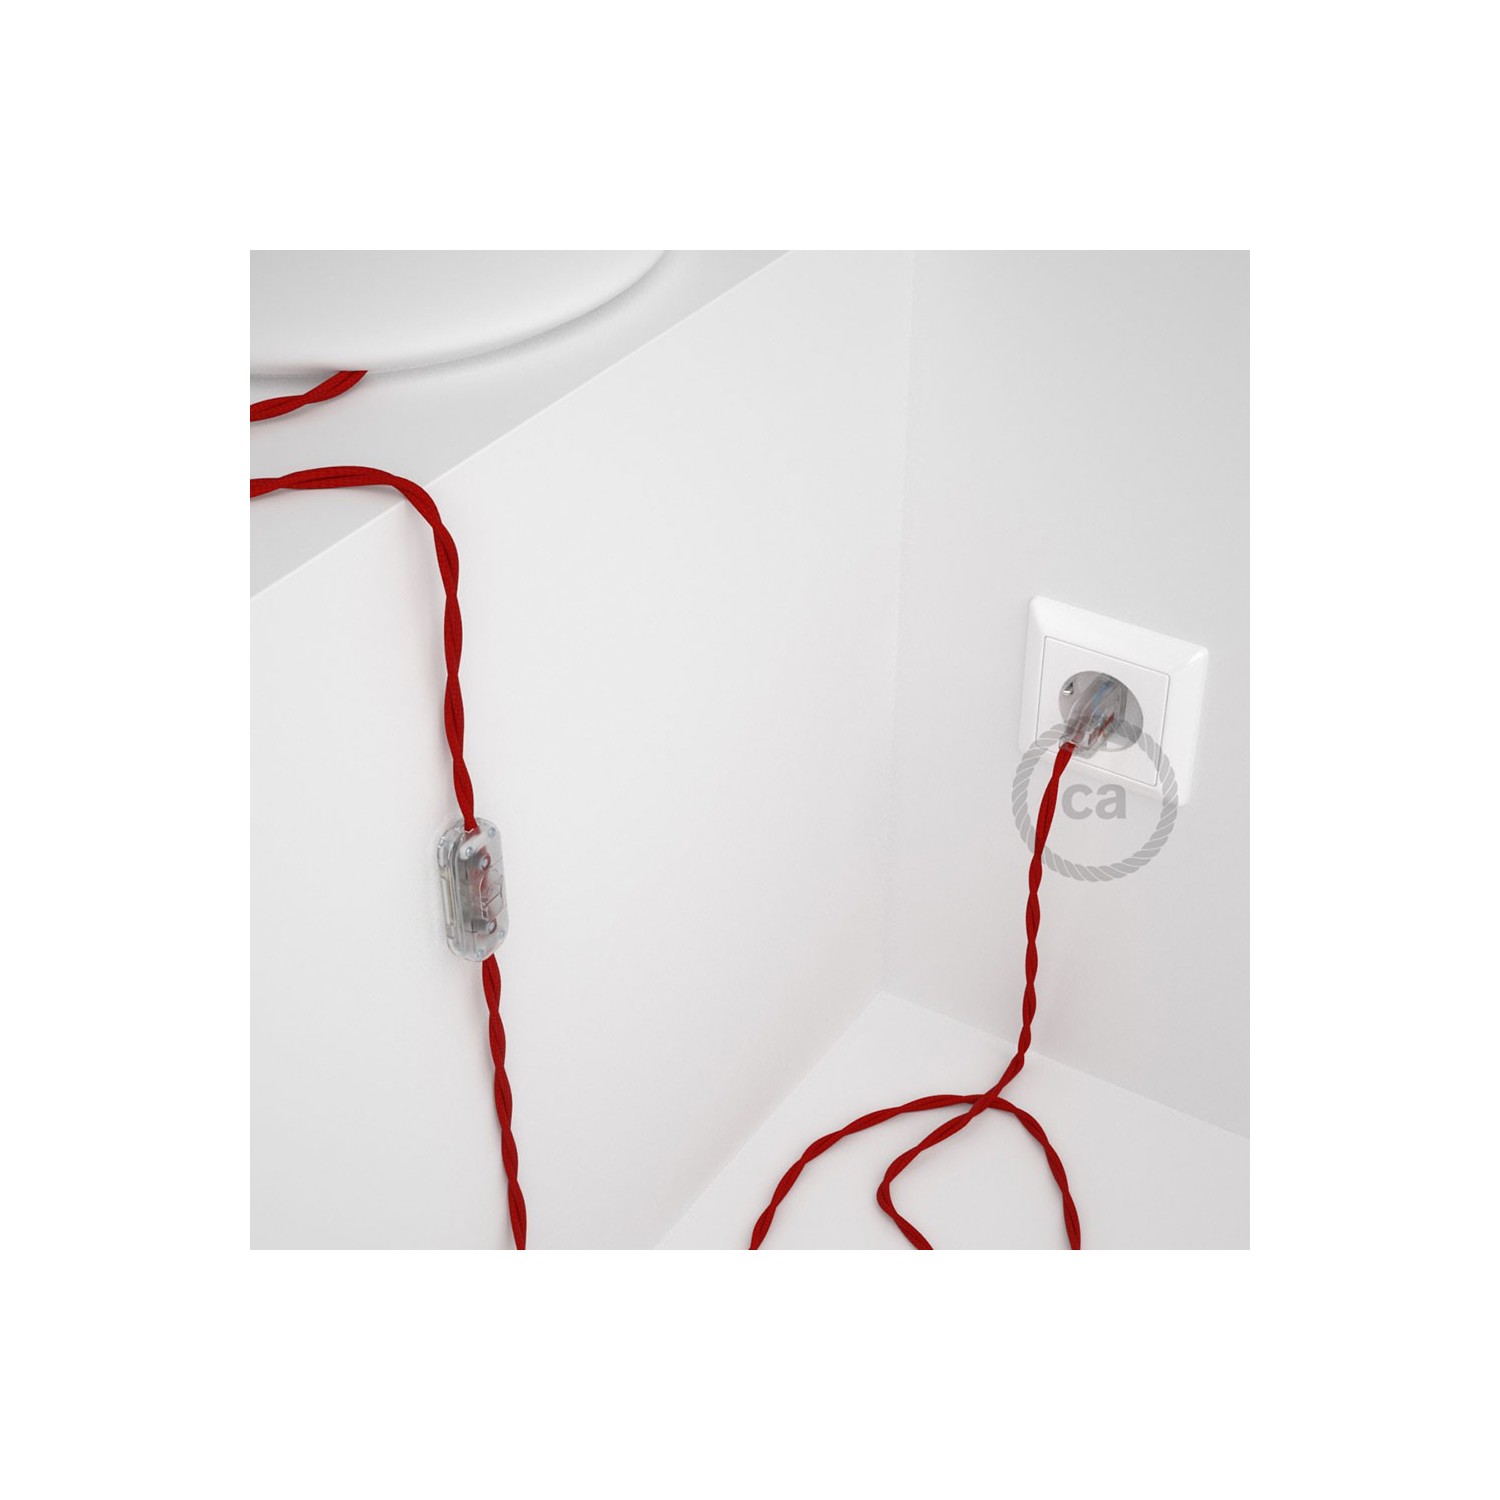 Cablaggio per lampada, cavo TM09 Effetto Seta Rosso 1,80 m. Scegli il colore dell'interruttore e della spina.